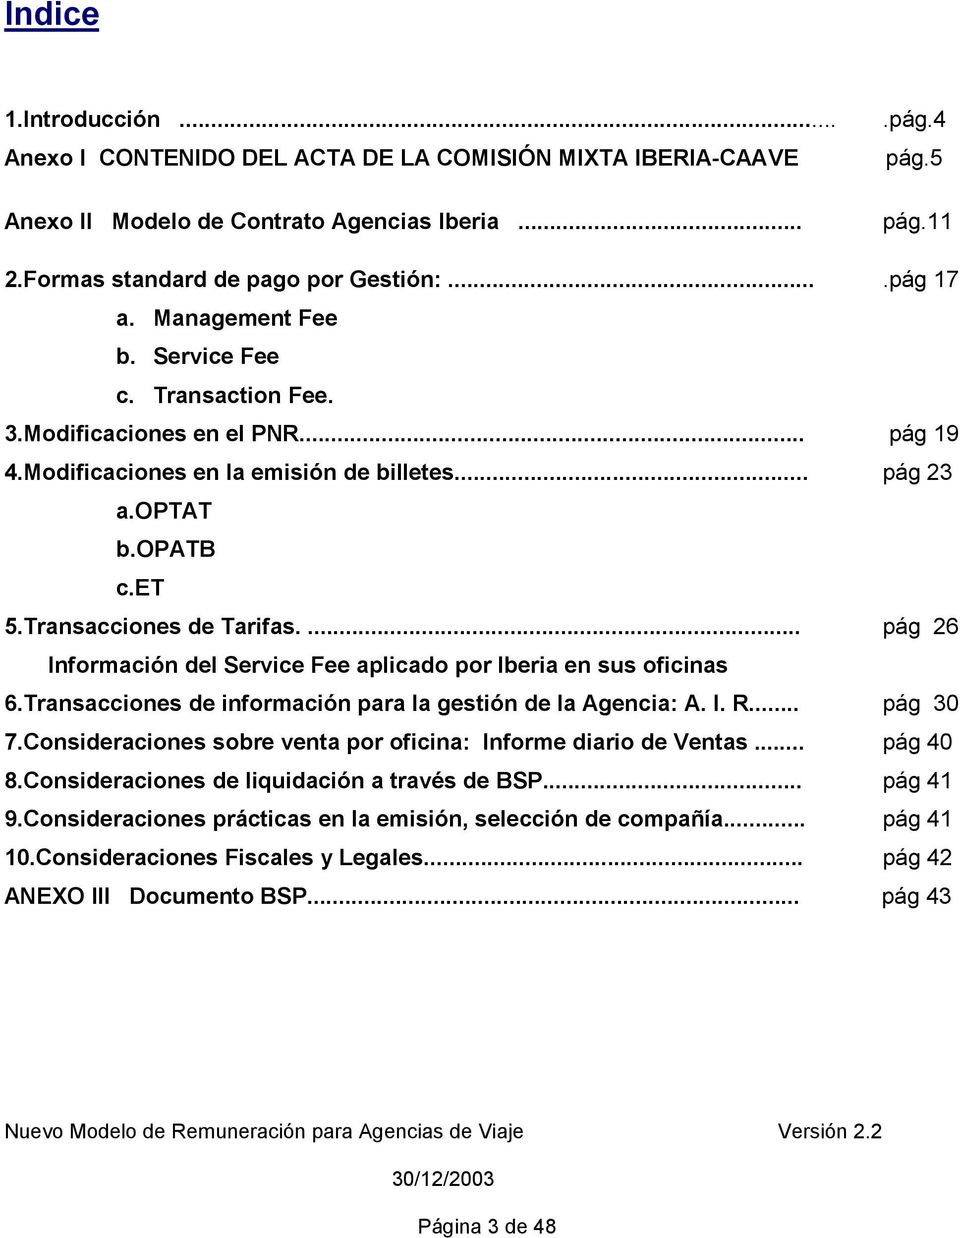 ... pág 26 Información del Service Fee aplicado por Iberia en sus oficinas 6.Transacciones de información para la gestión de la Agencia: A. I. R... pág 30 7.